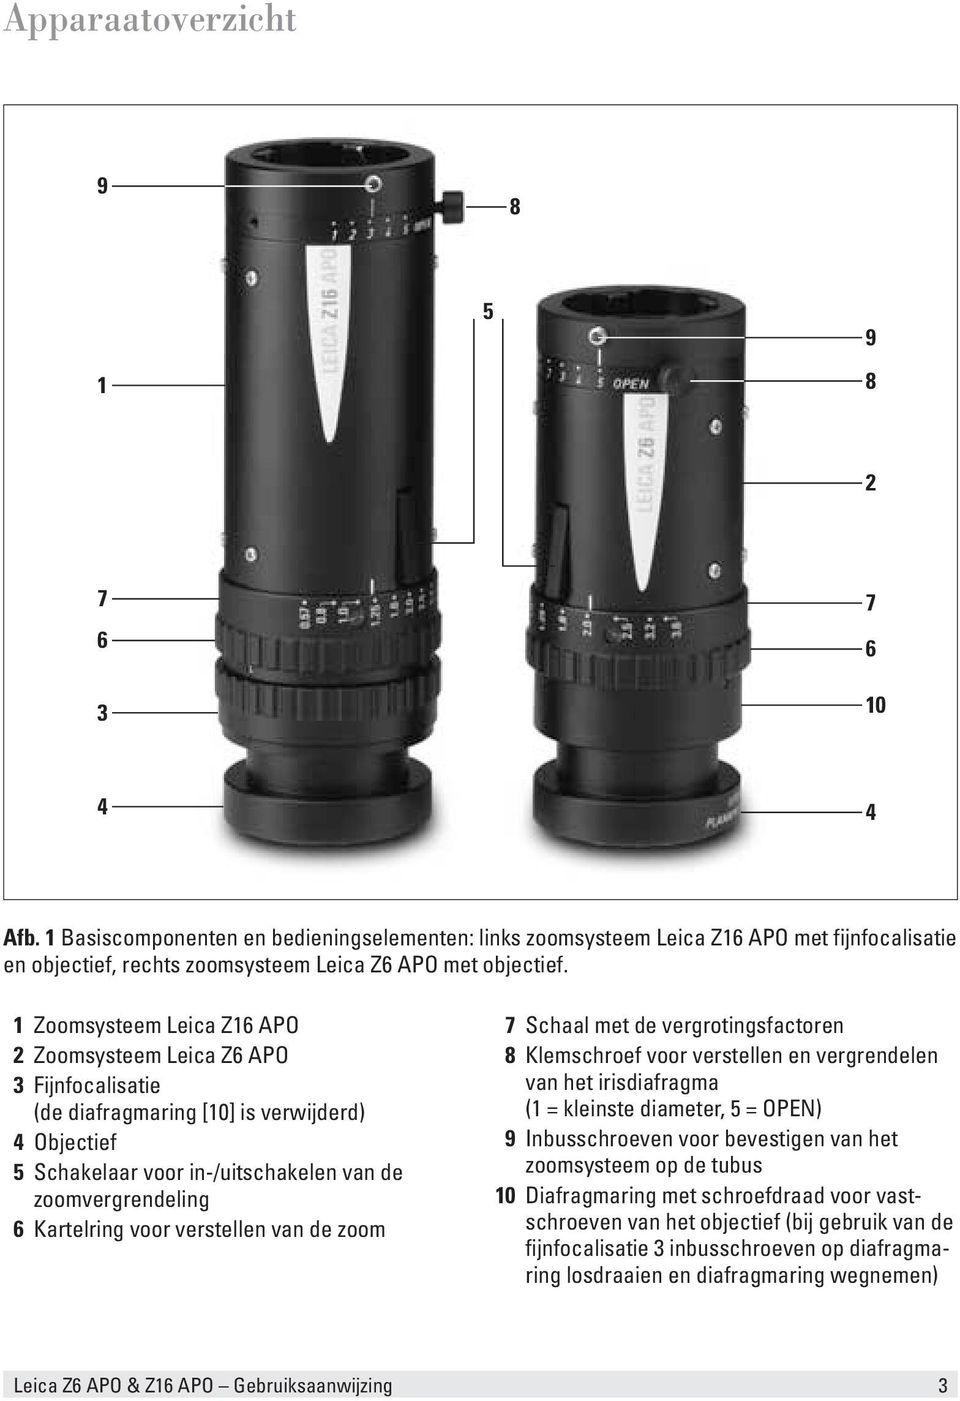 1 Zoomsysteem Leica Z16 APO 2 Zoomsysteem Leica Z6 APO 3 Fijnfocalisatie (de diafragmaring [10] is verwijderd) 4 Objectief 5 Schakelaar voor in-/uitschakelen van de zoomvergrendeling 6 Kartelring